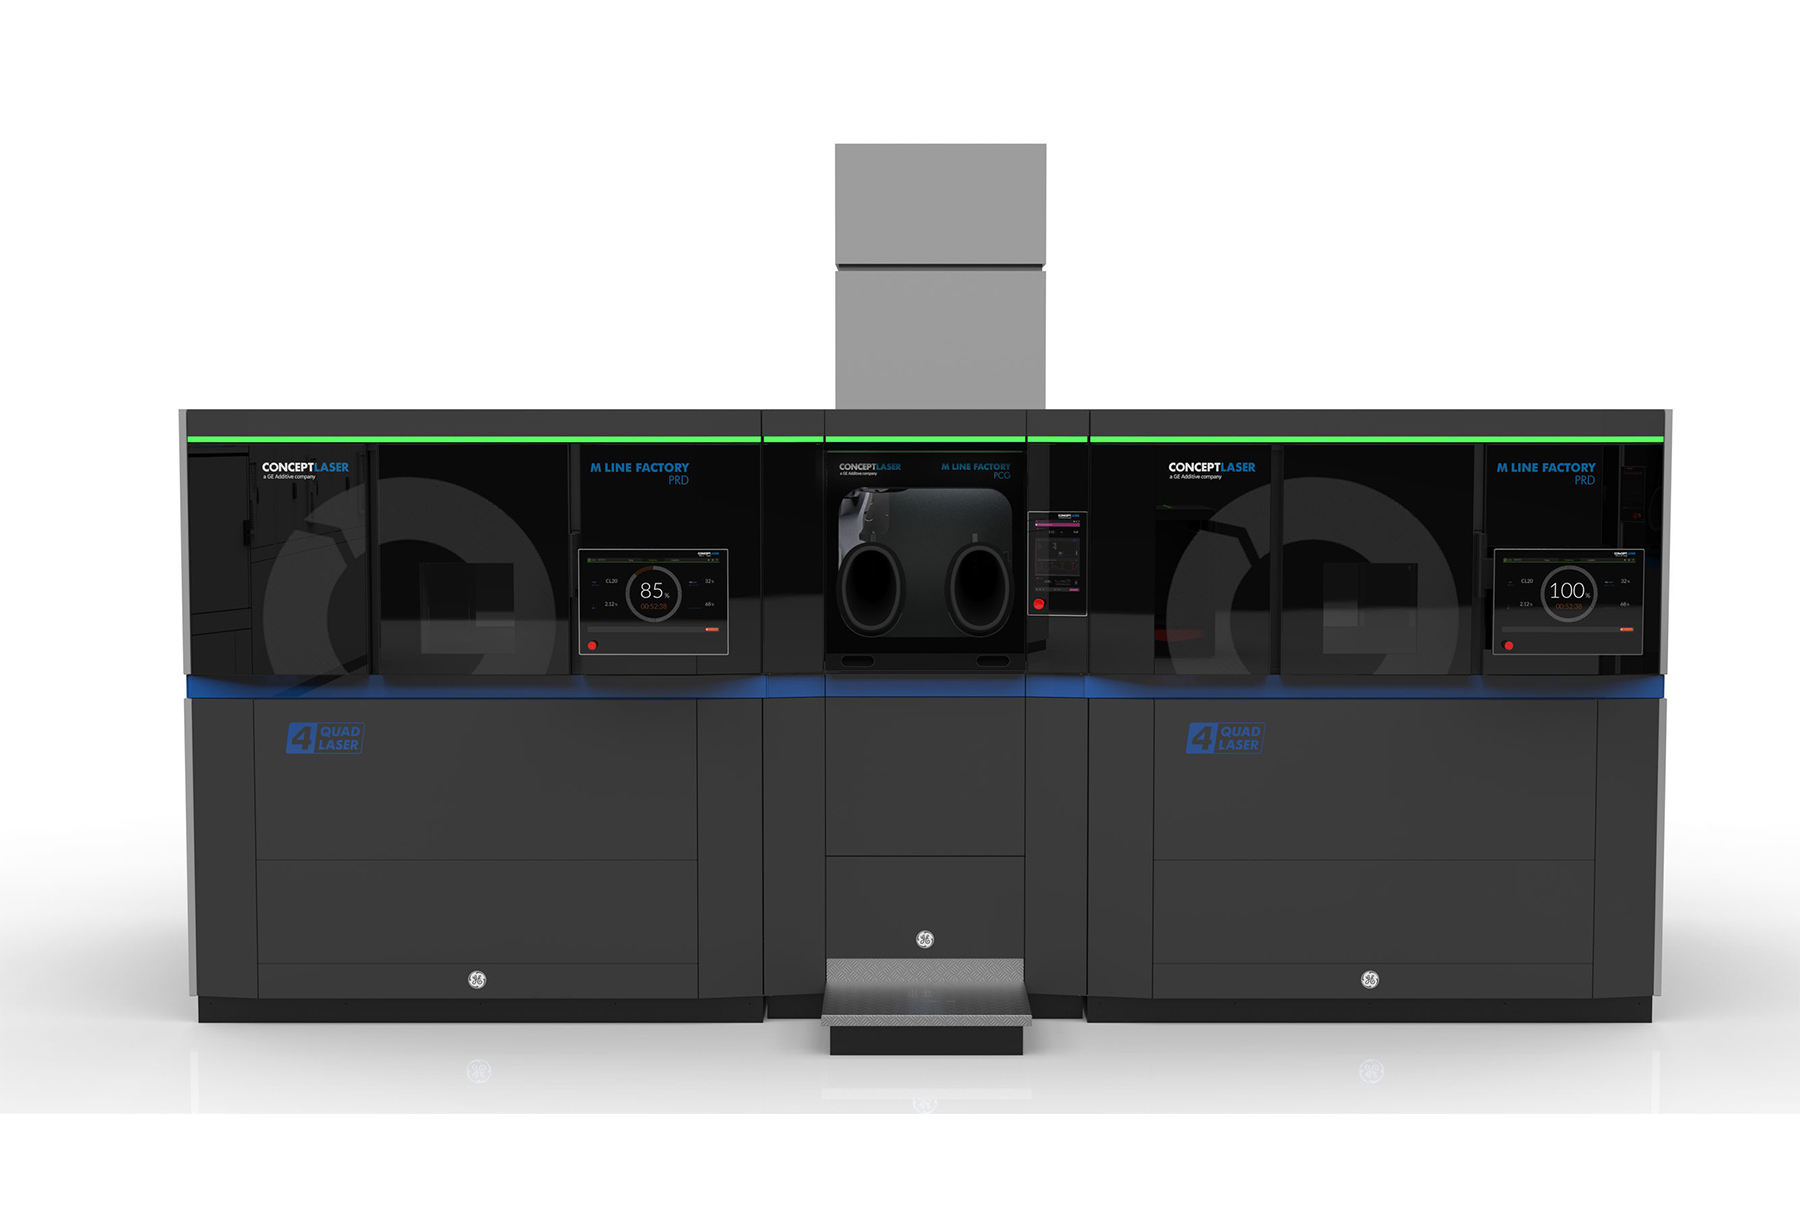 3D принтер Concept Laser M Line Factory